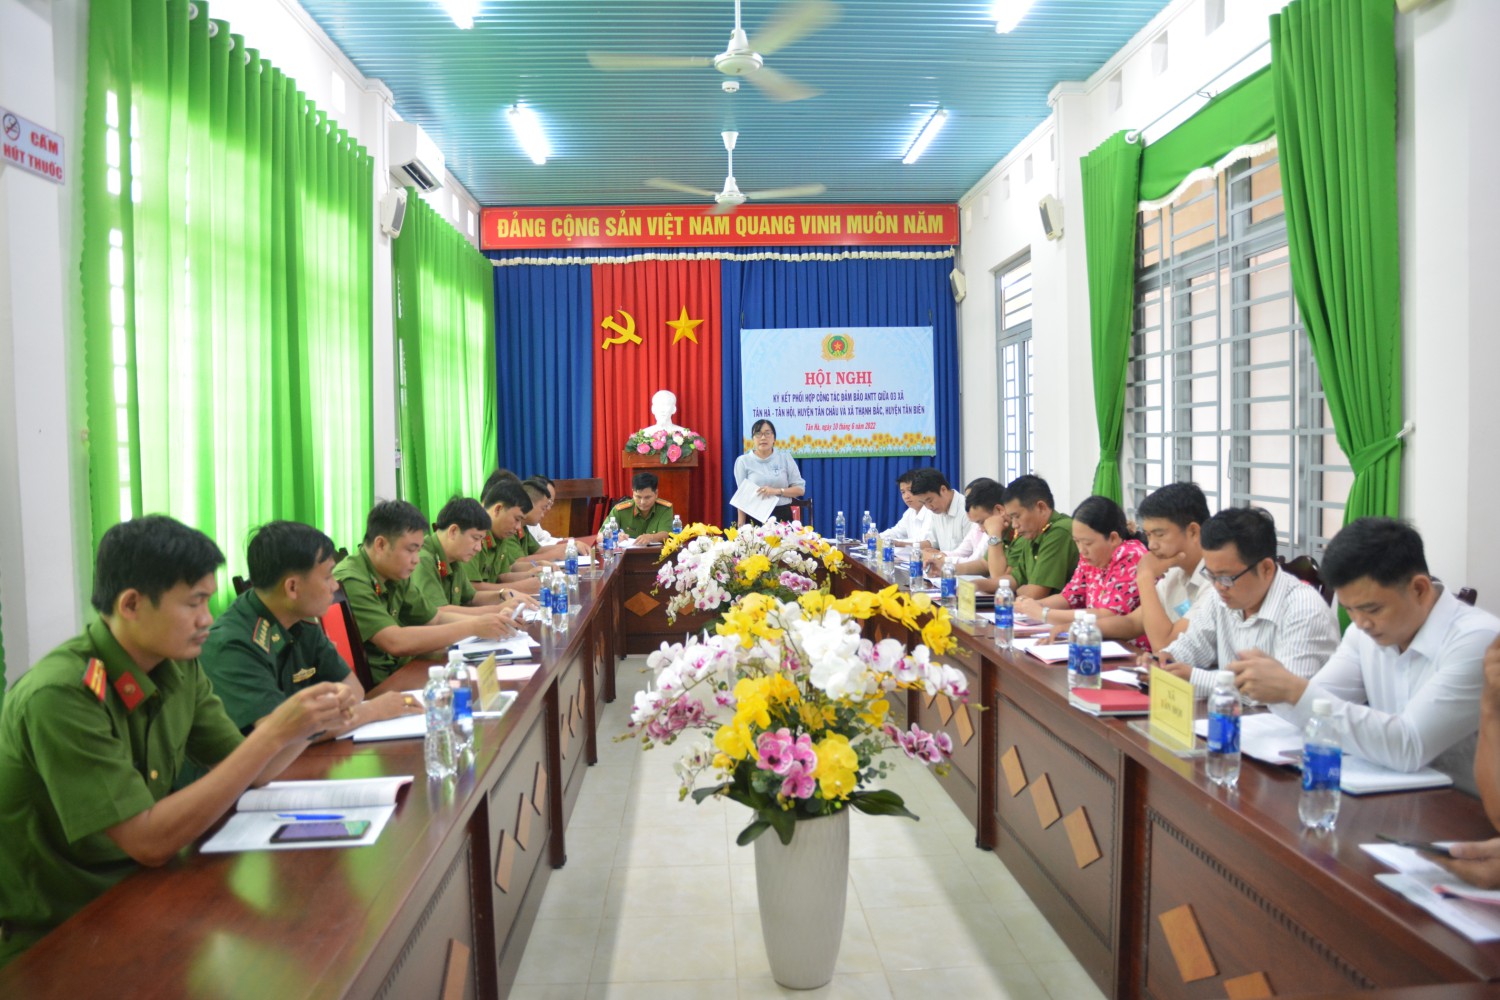 Ký kết phối hợp đảm bảo an ninh trật tự giữa 3 xã   Tân Hà, Tân Hội, huyện Tân Châu và xã Thạnh Bắc, huyện Tân Biên